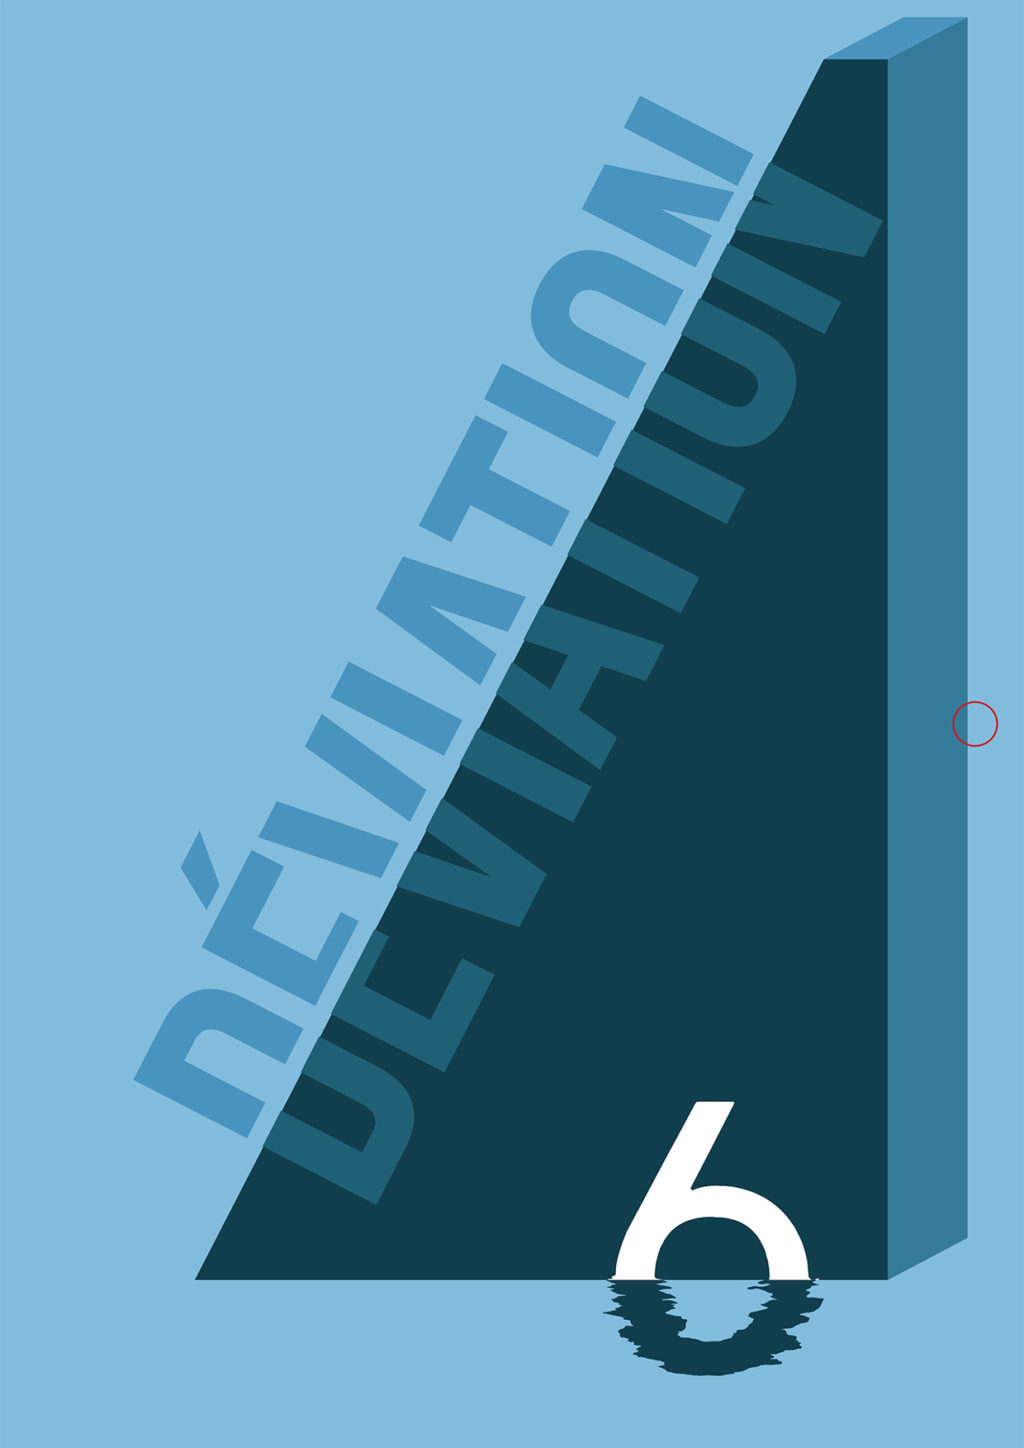 Couverture du magazine "Déviation" représentant un triangle bleu foncé sur un fond bleu clair accompagné du titre et du n°6.